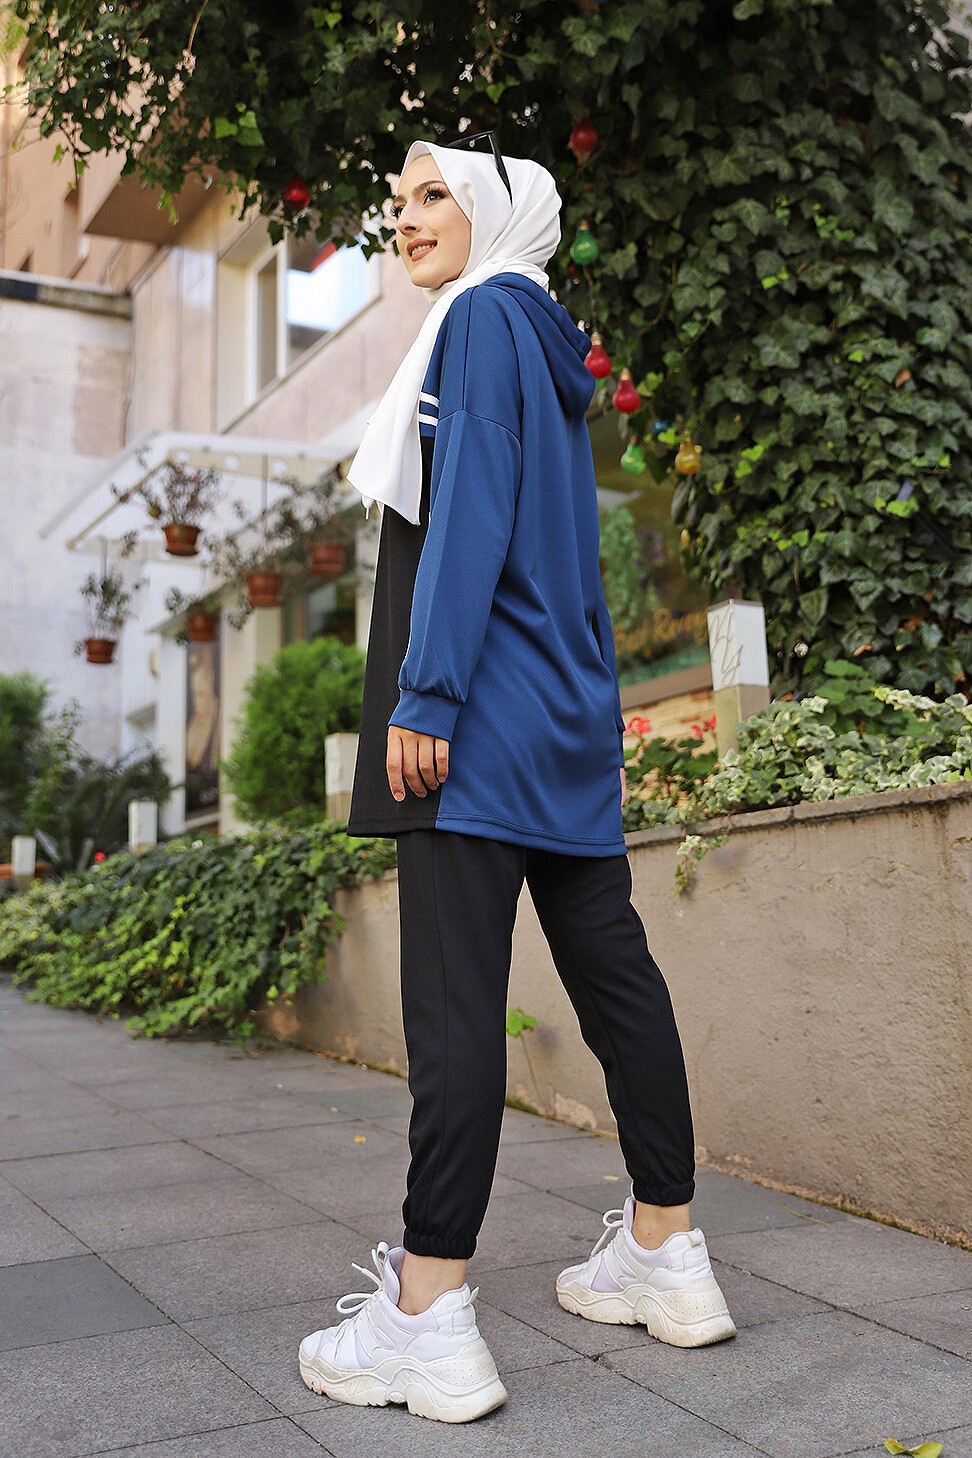 Survêtement femme (Ensemble décontracté sweet à capuche et pantalon) -  Couleur Blanc et Bleu indigo - Prêt à porter et accessoires